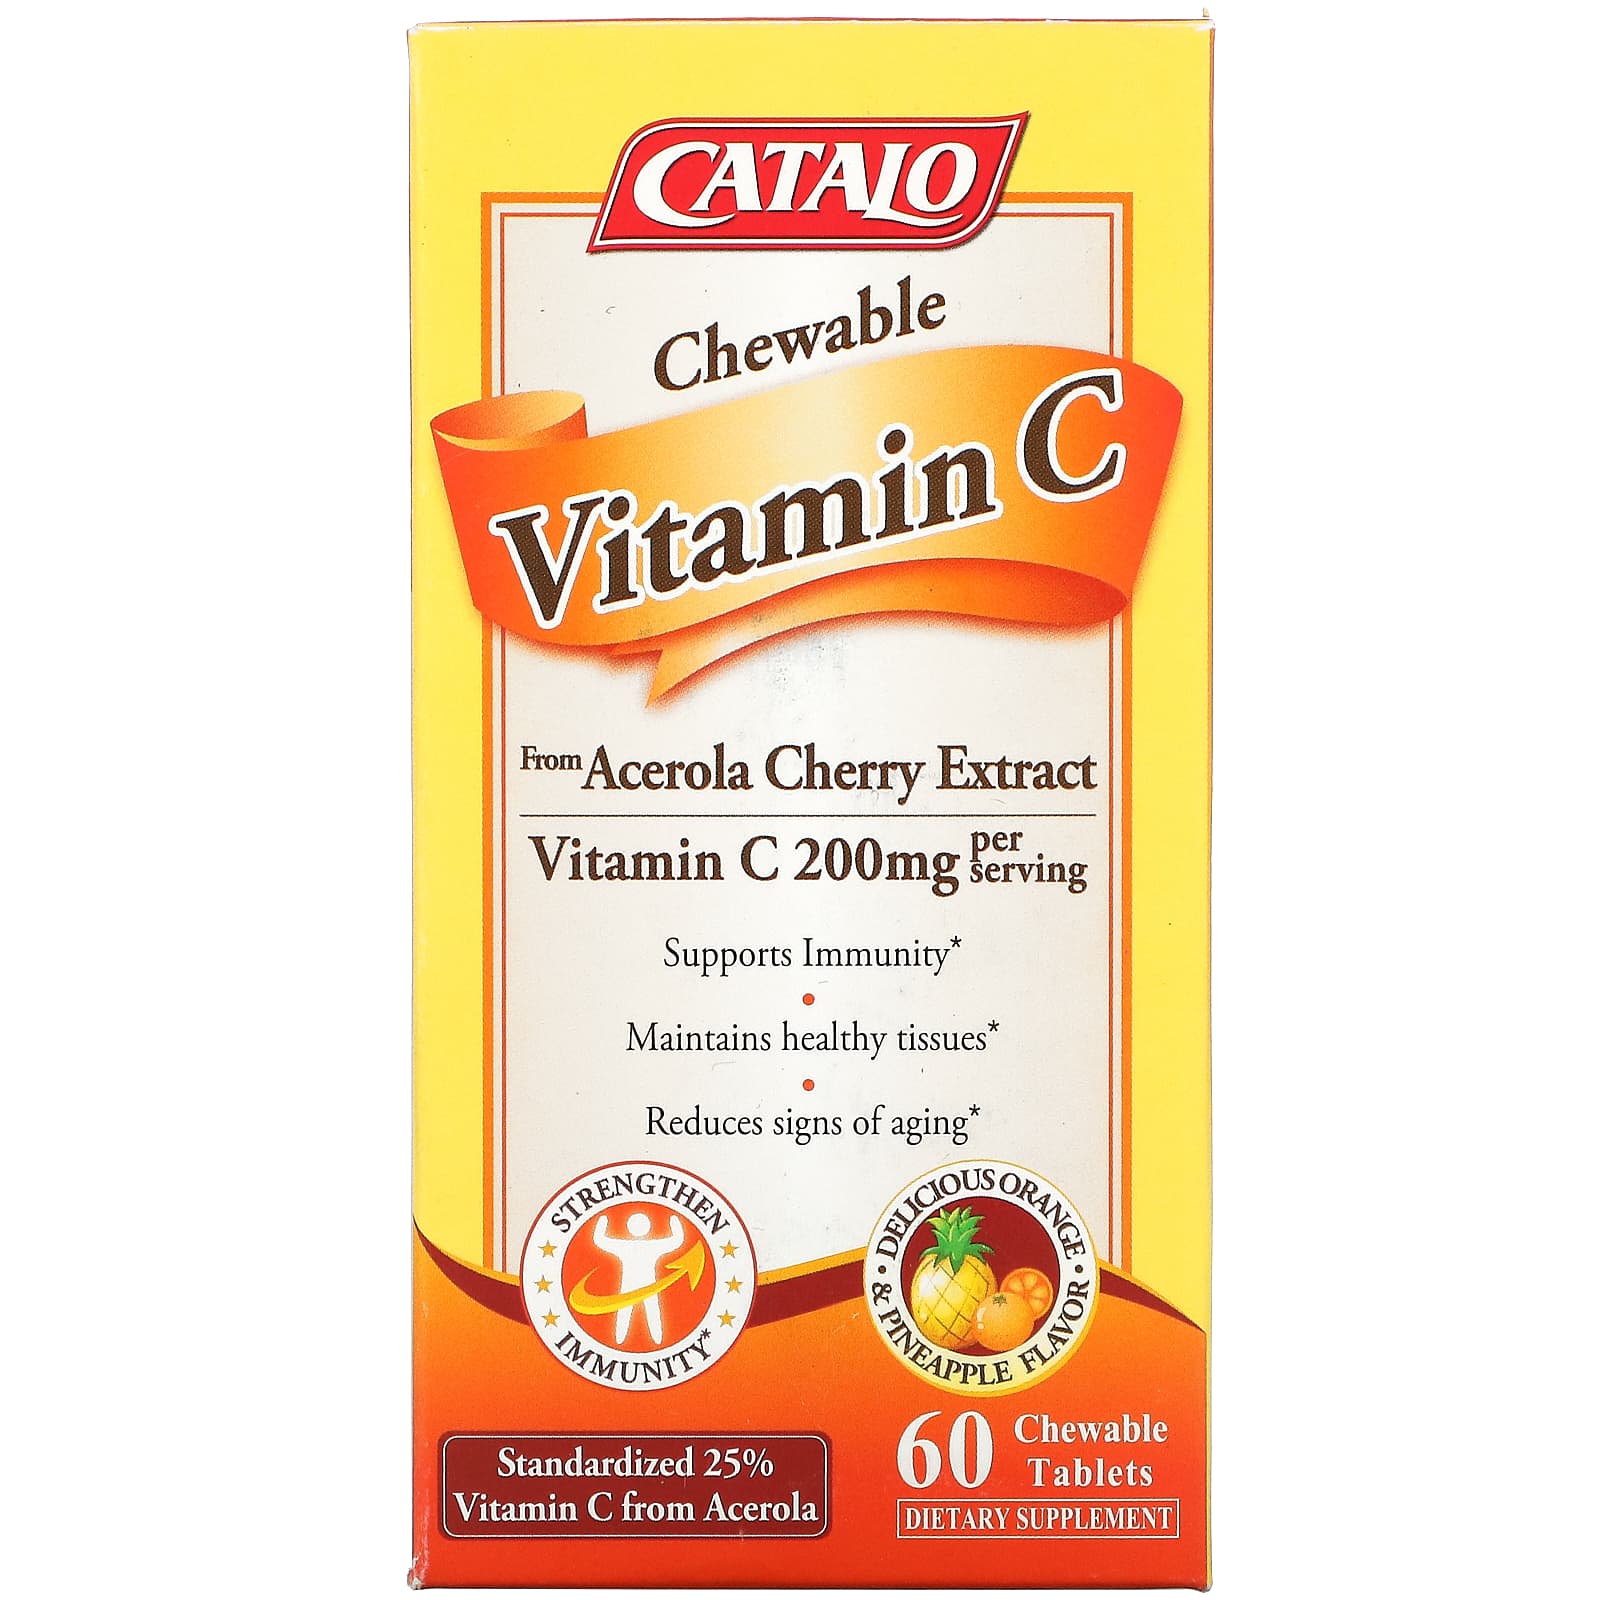 Жевательный Витамин C Catalo Naturals, апельсин и ананас, 60 жевательных таблеток sundown naturals жевательные мармеладки с пробиотиком и иммунитетом ананас малина и апельсин 60 жевательных таблеток